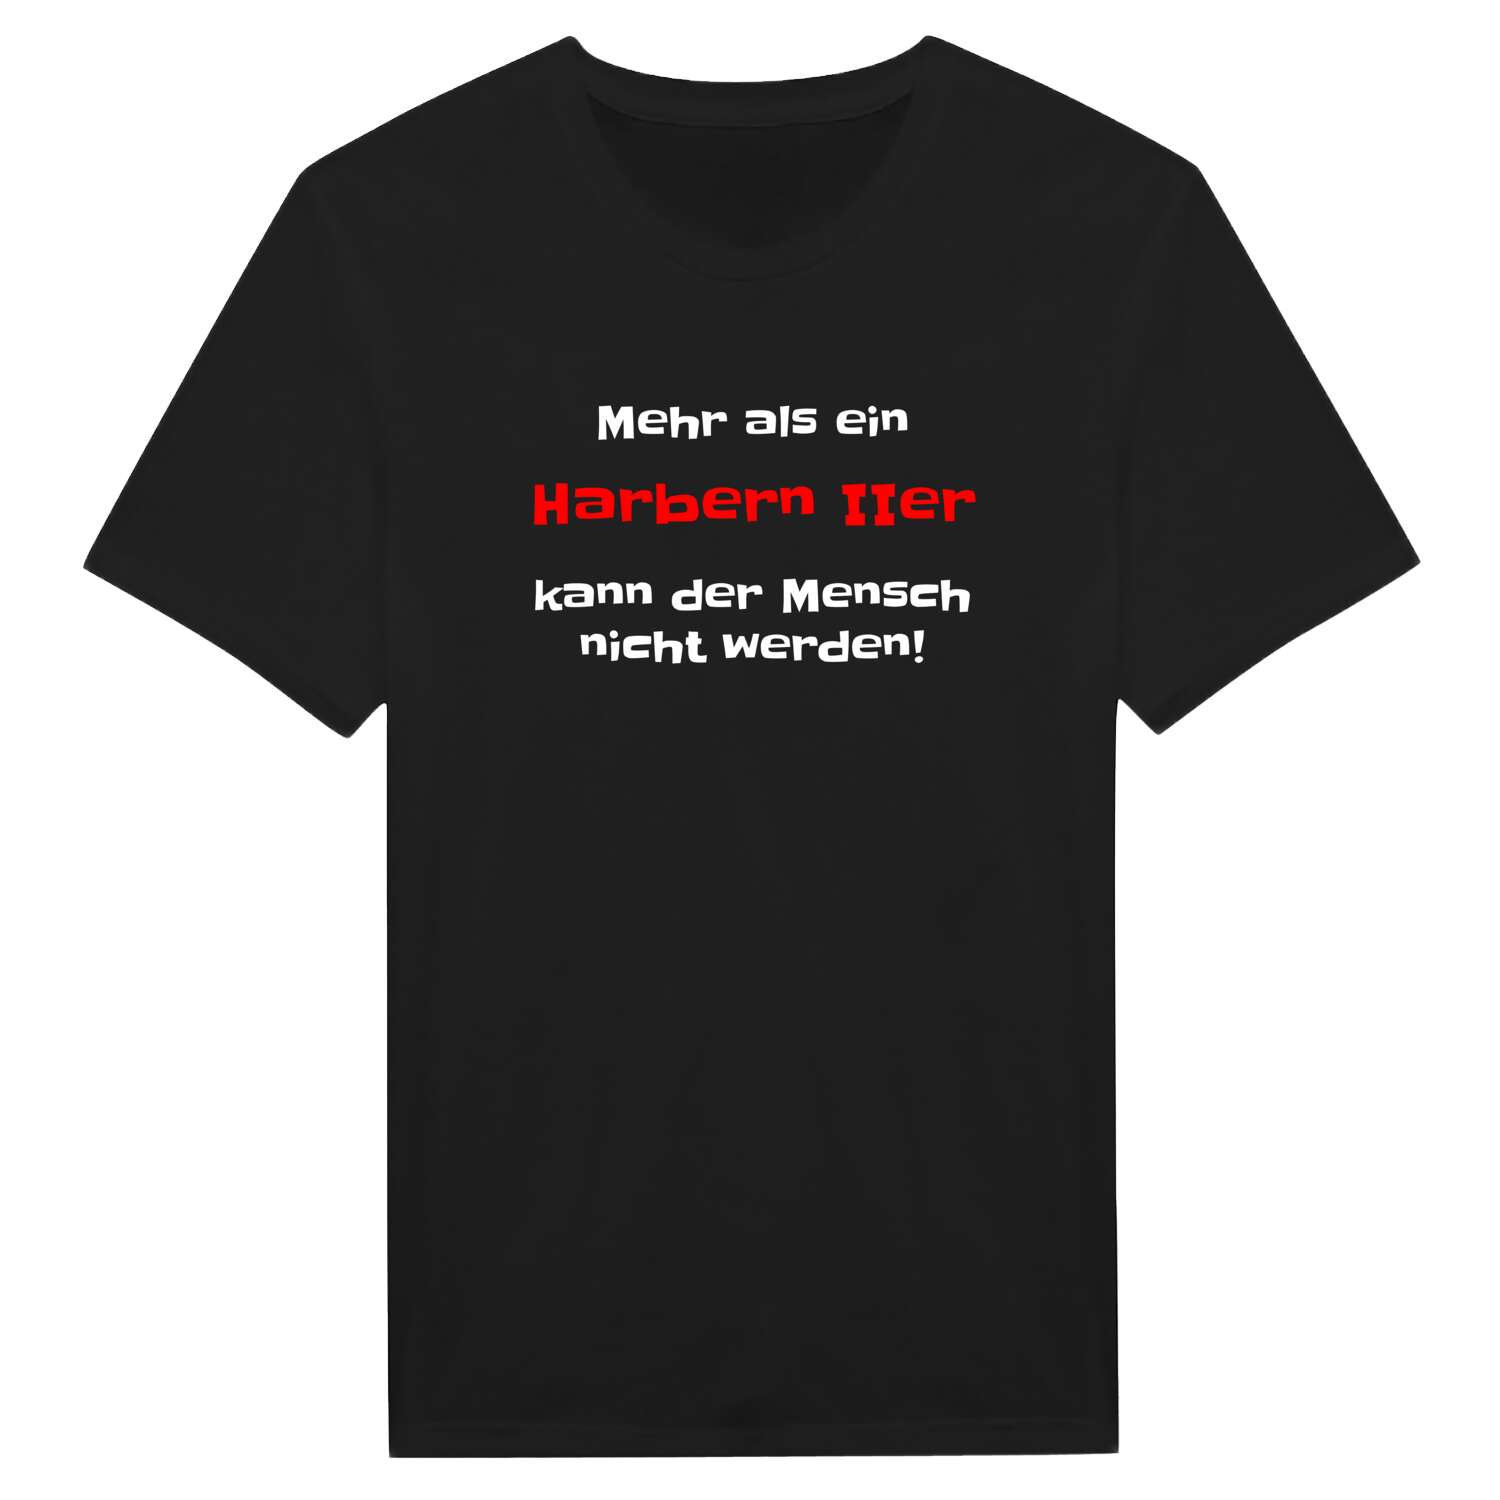 Harbern II T-Shirt »Mehr als ein«